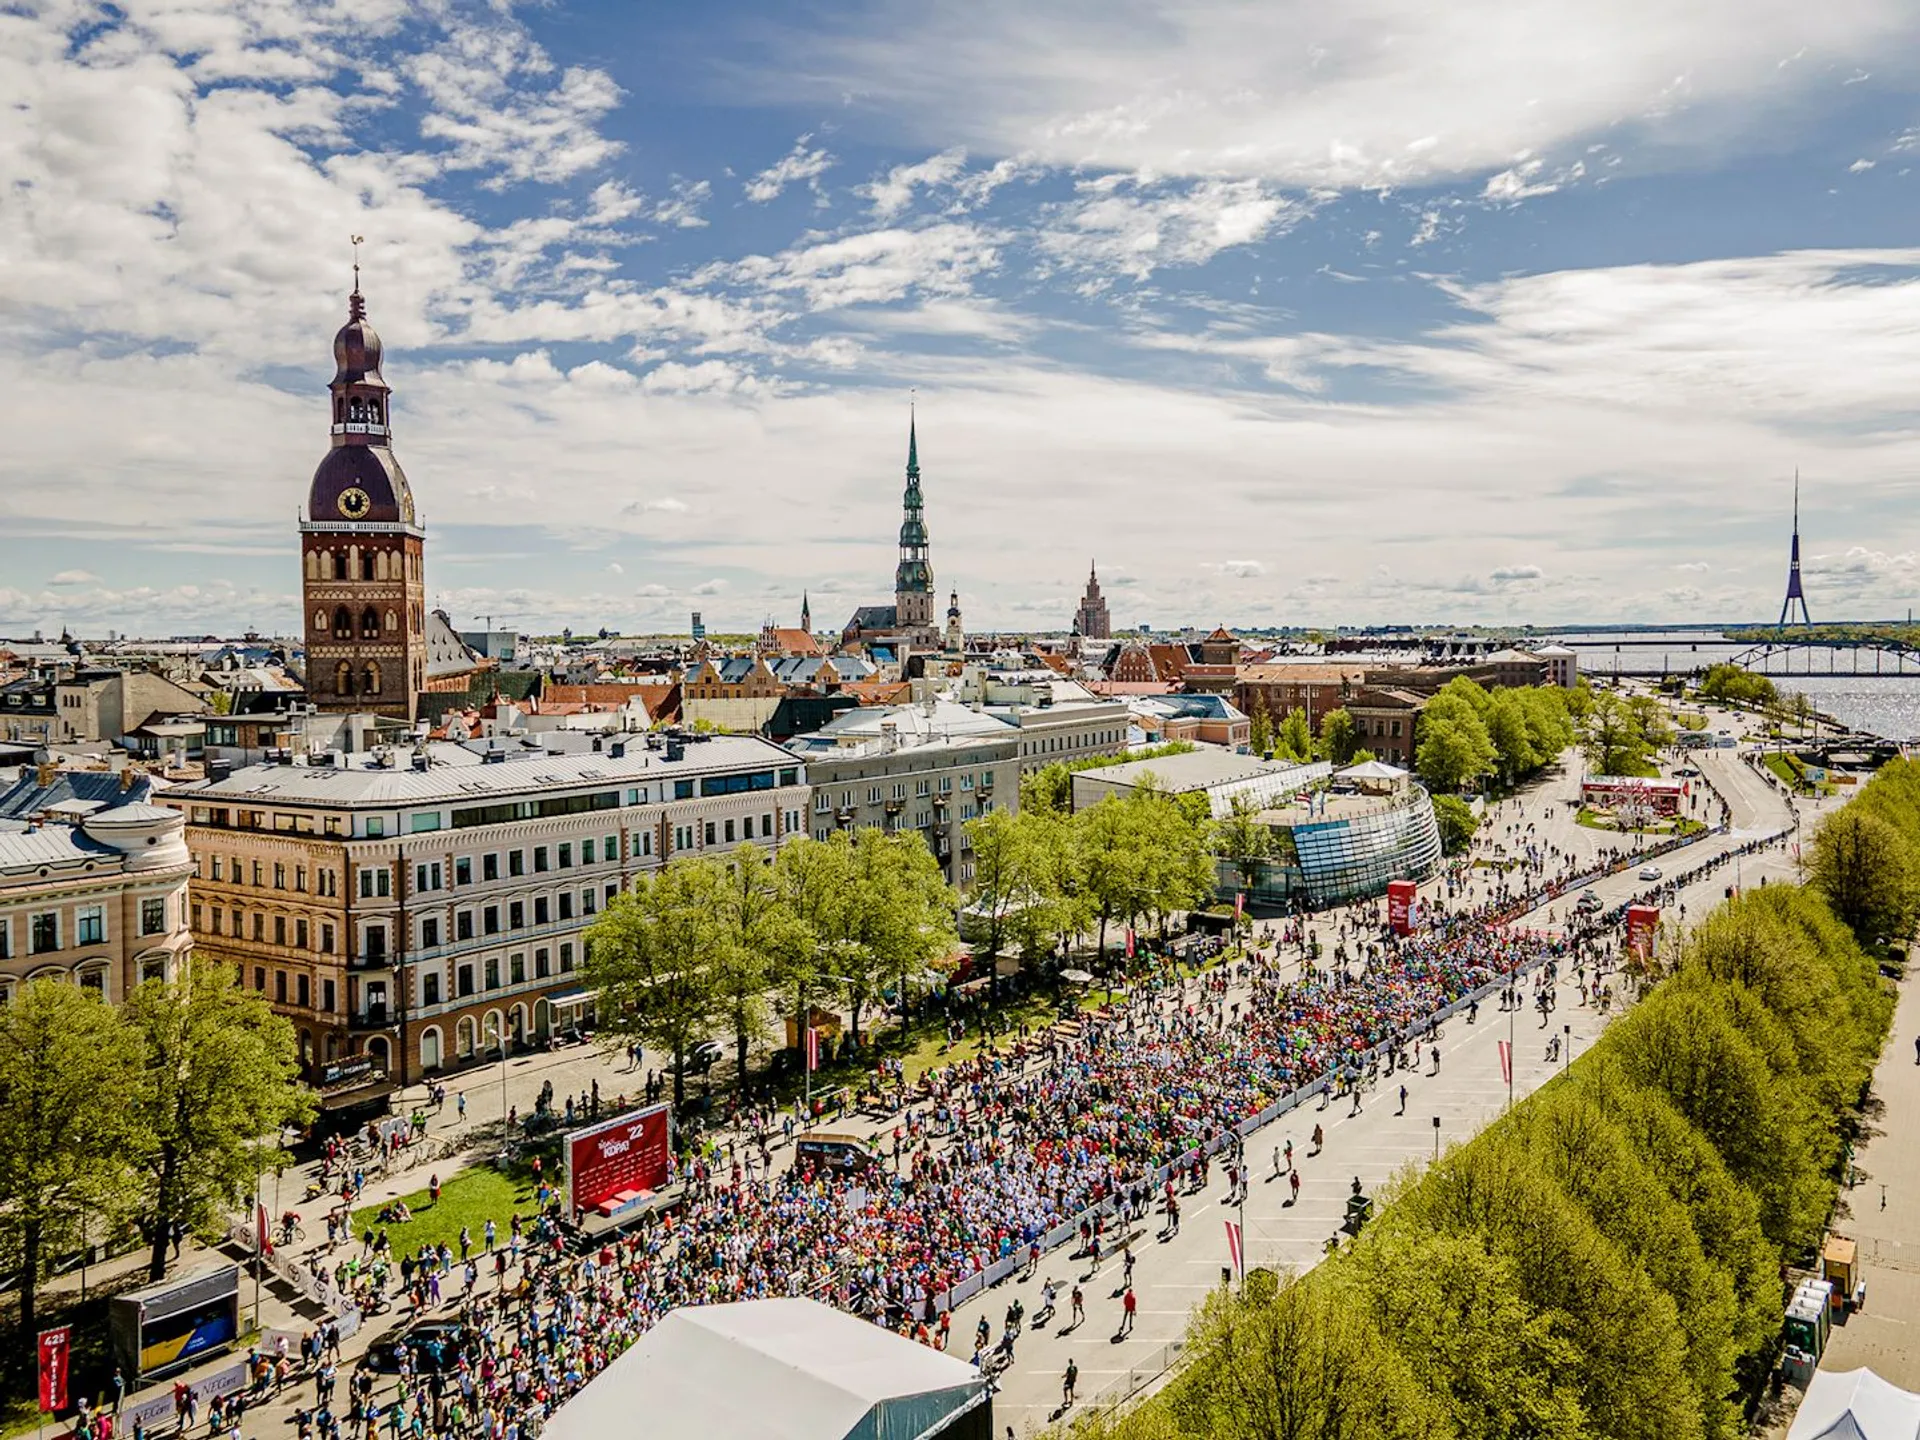 Rimi Riga Marathon